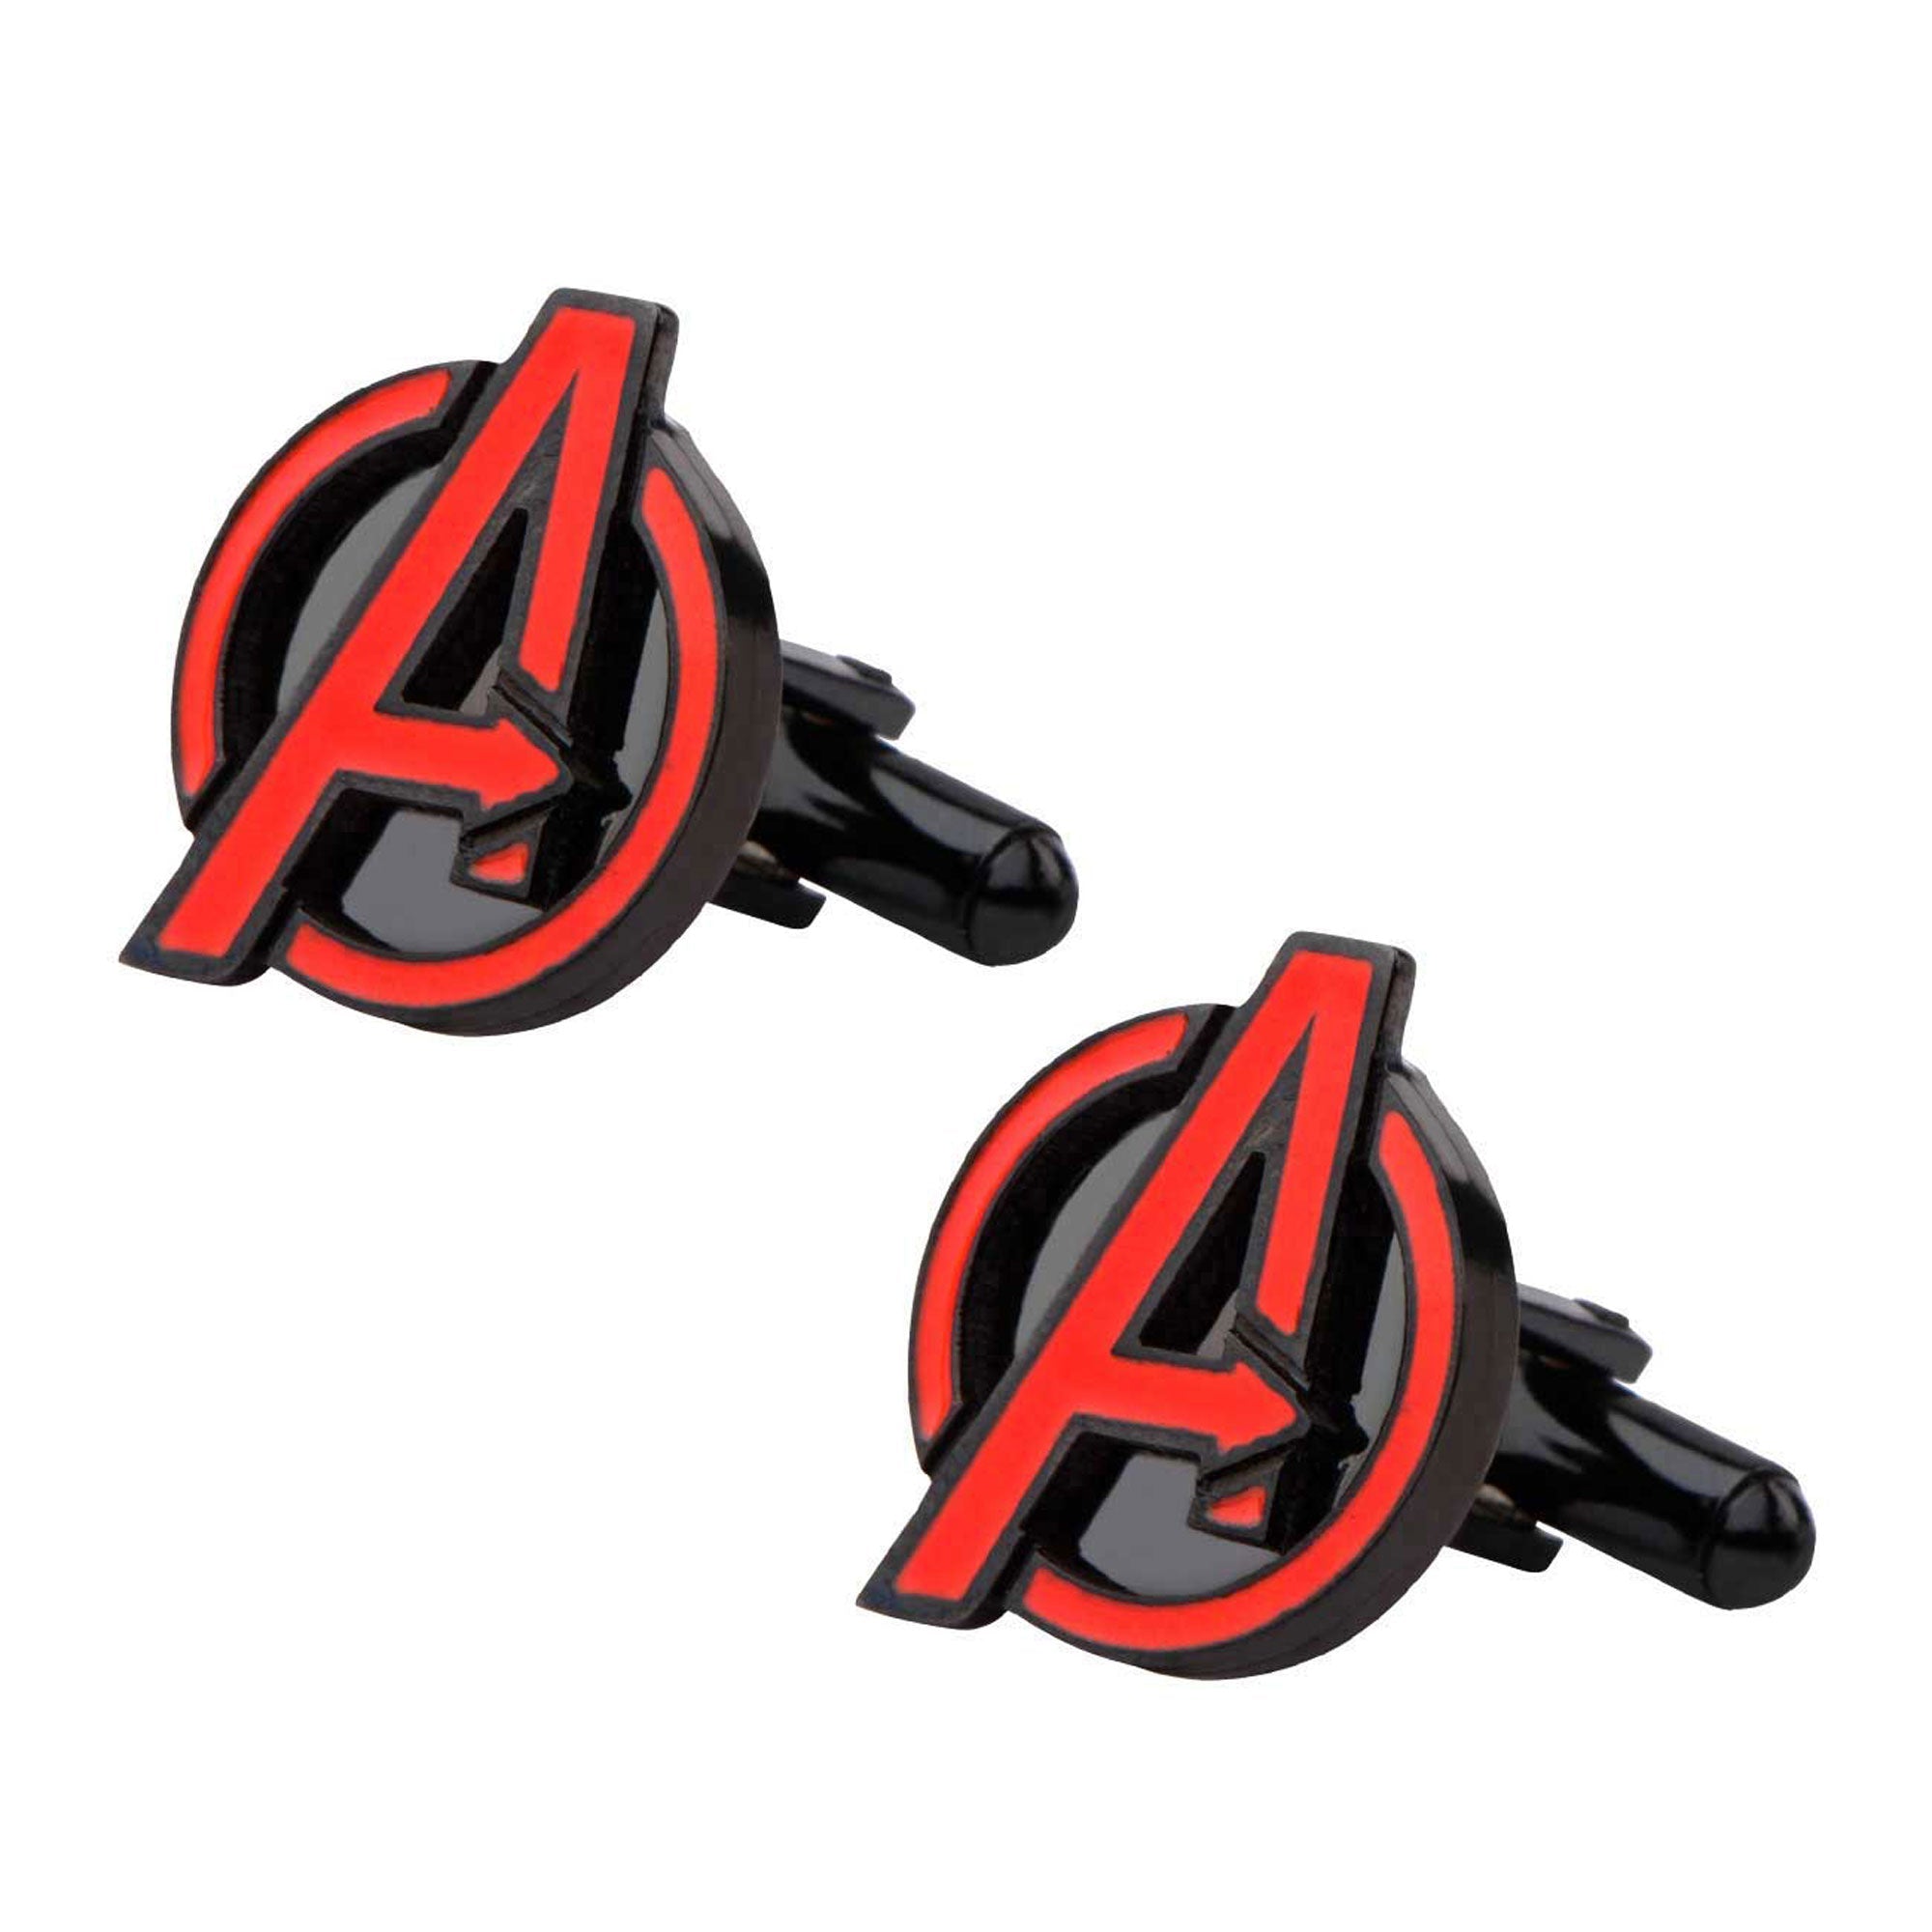 Marvel Avengers Age of Ultron Avengers Logo Stainless Steel Cufflinks